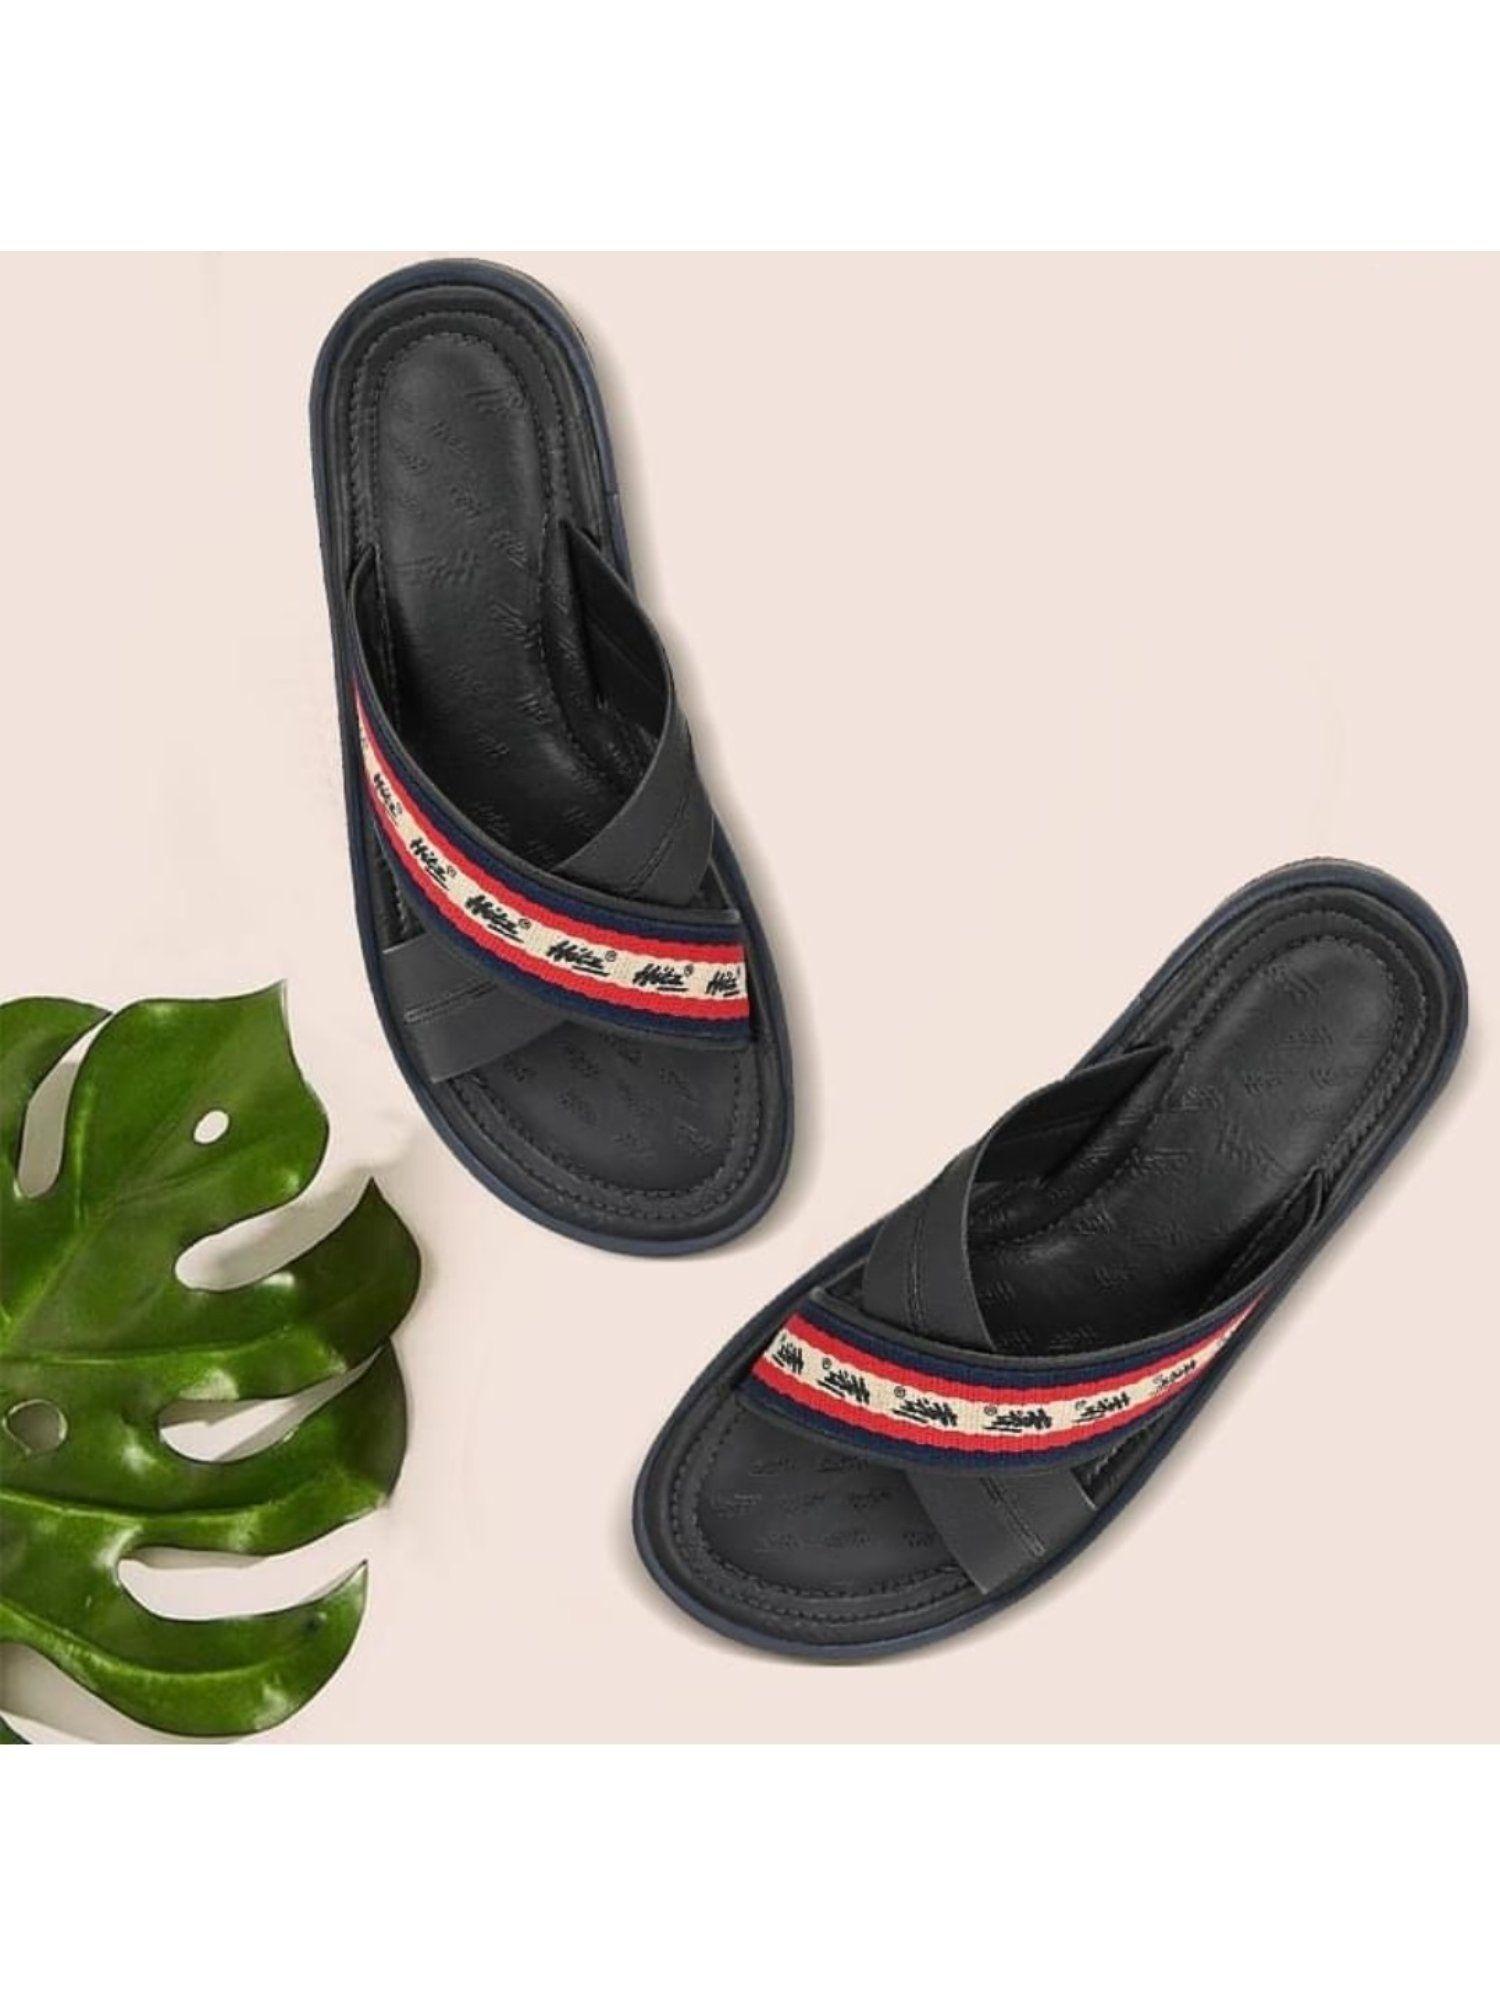 men's black leather cross strap slippers